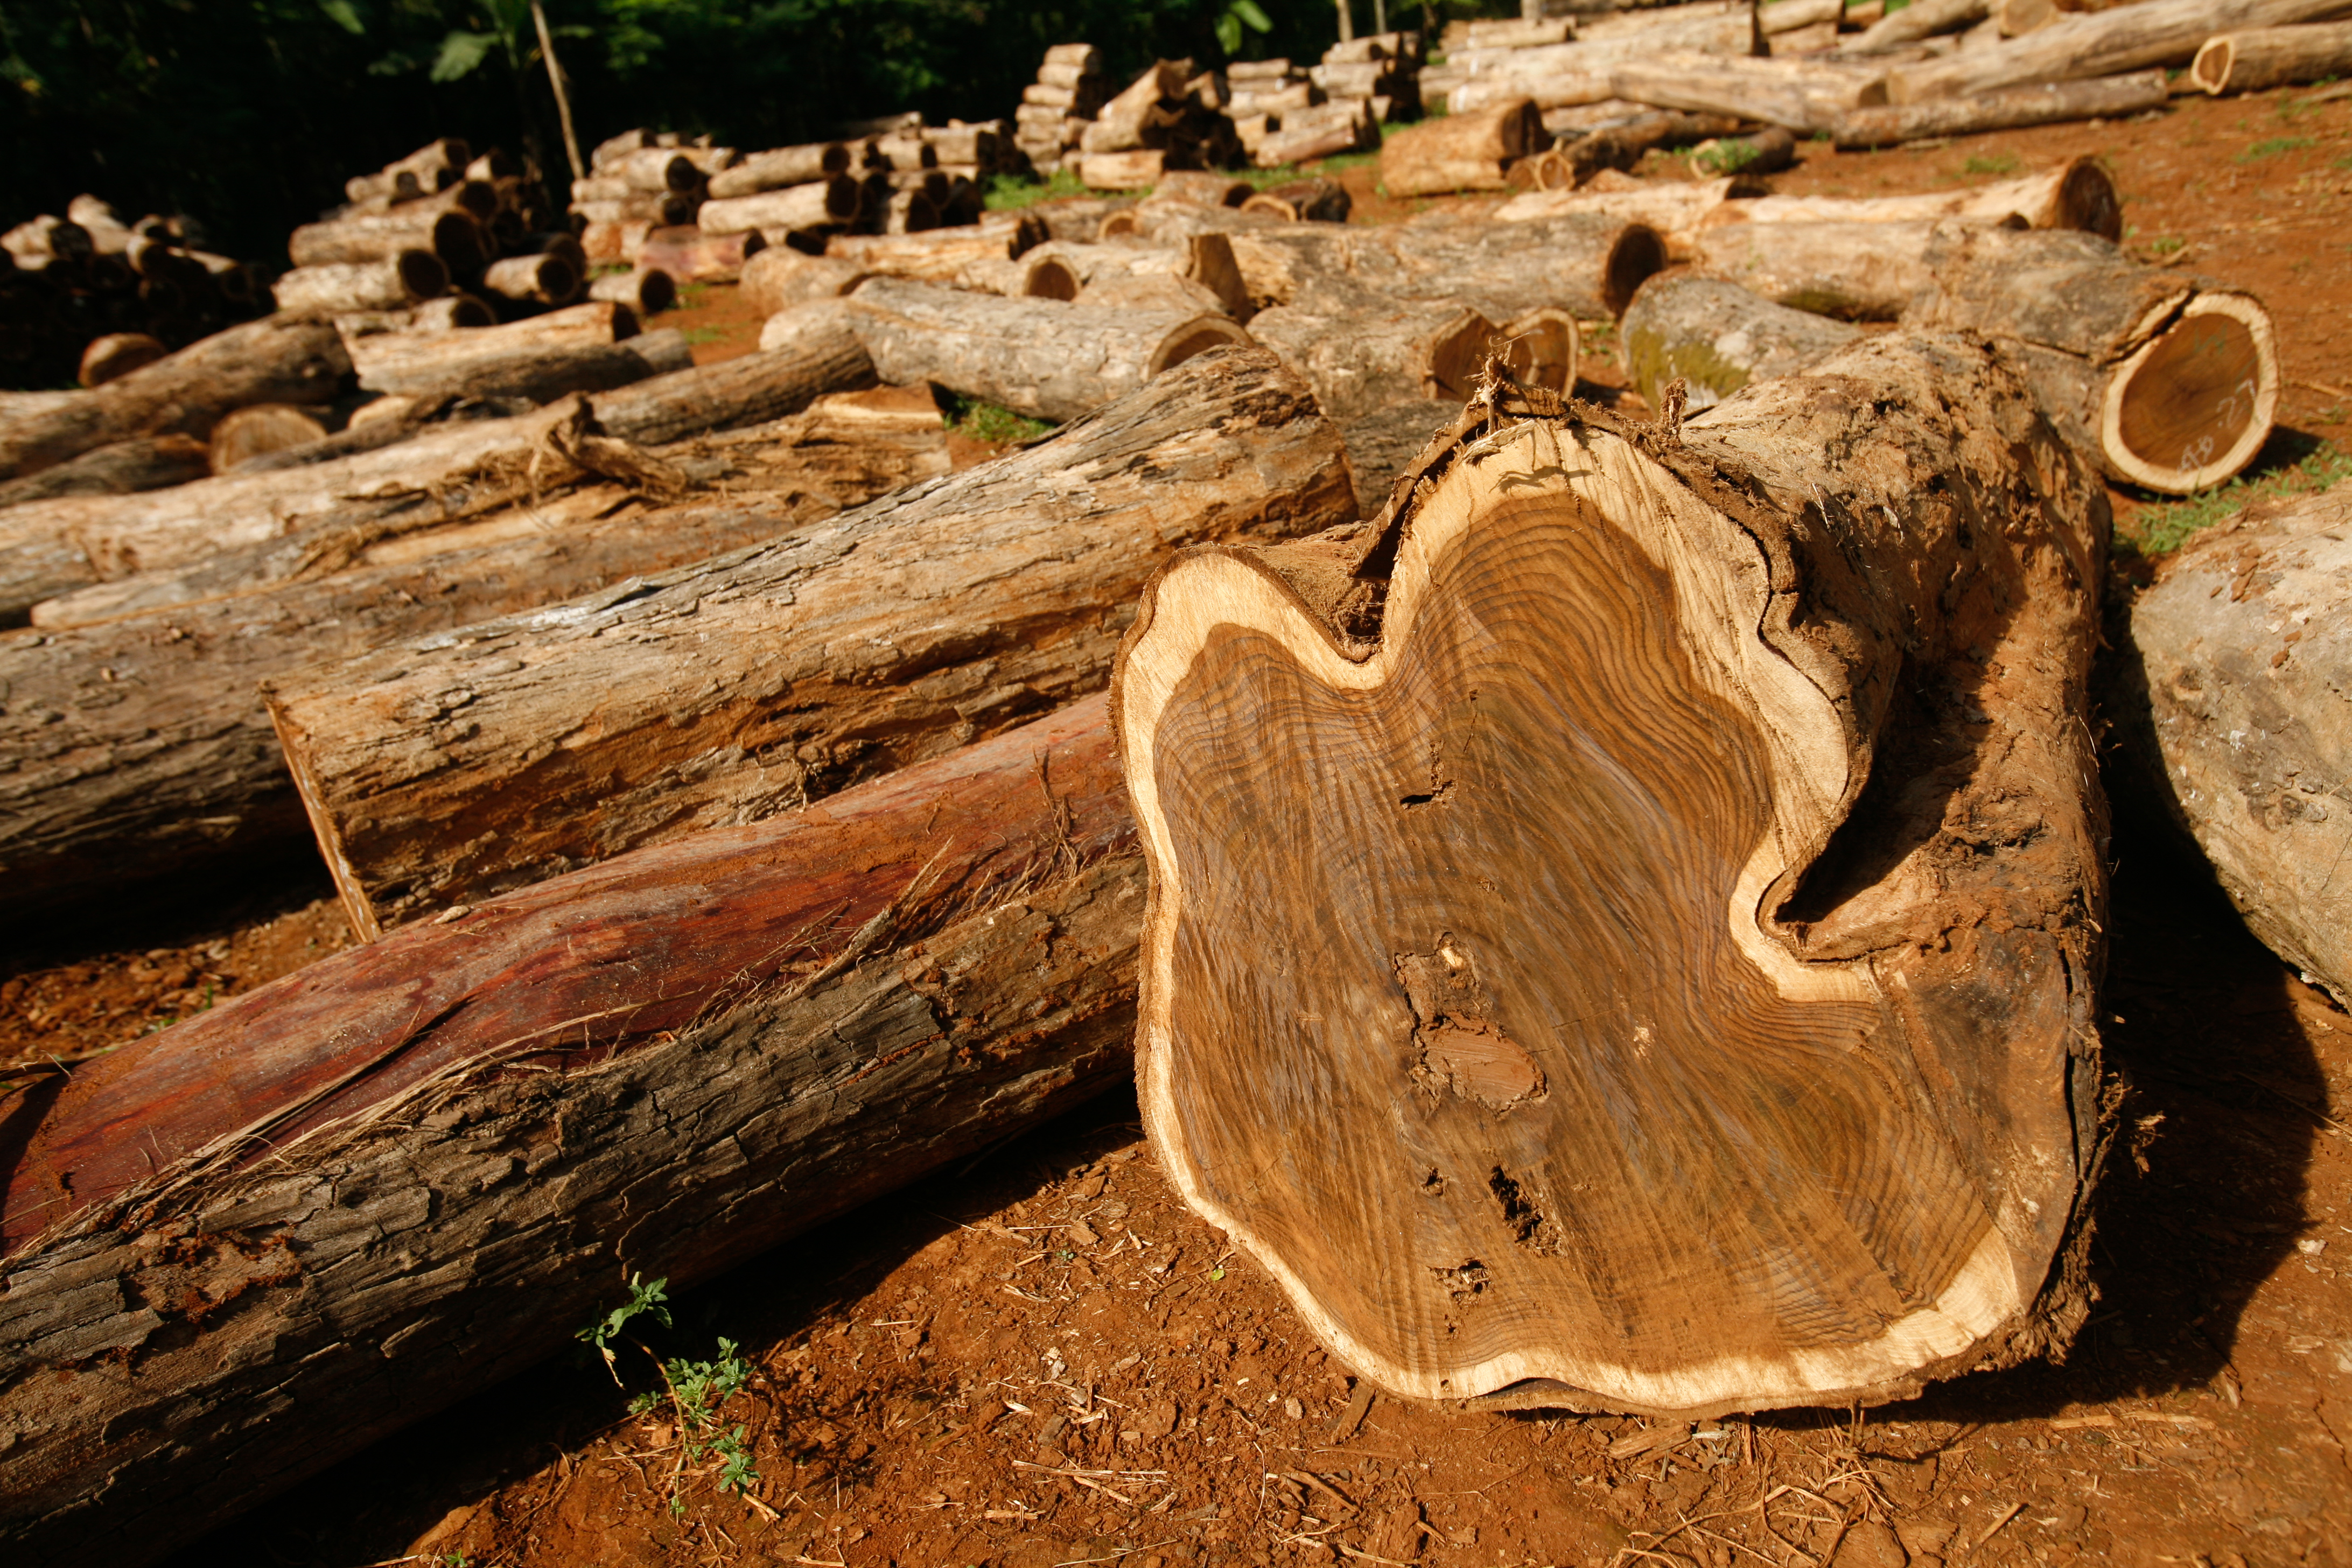 Beginilah cara kami mengeluarkan kayu yang dipanen secara ilegal dari dunia – Milieudefensie